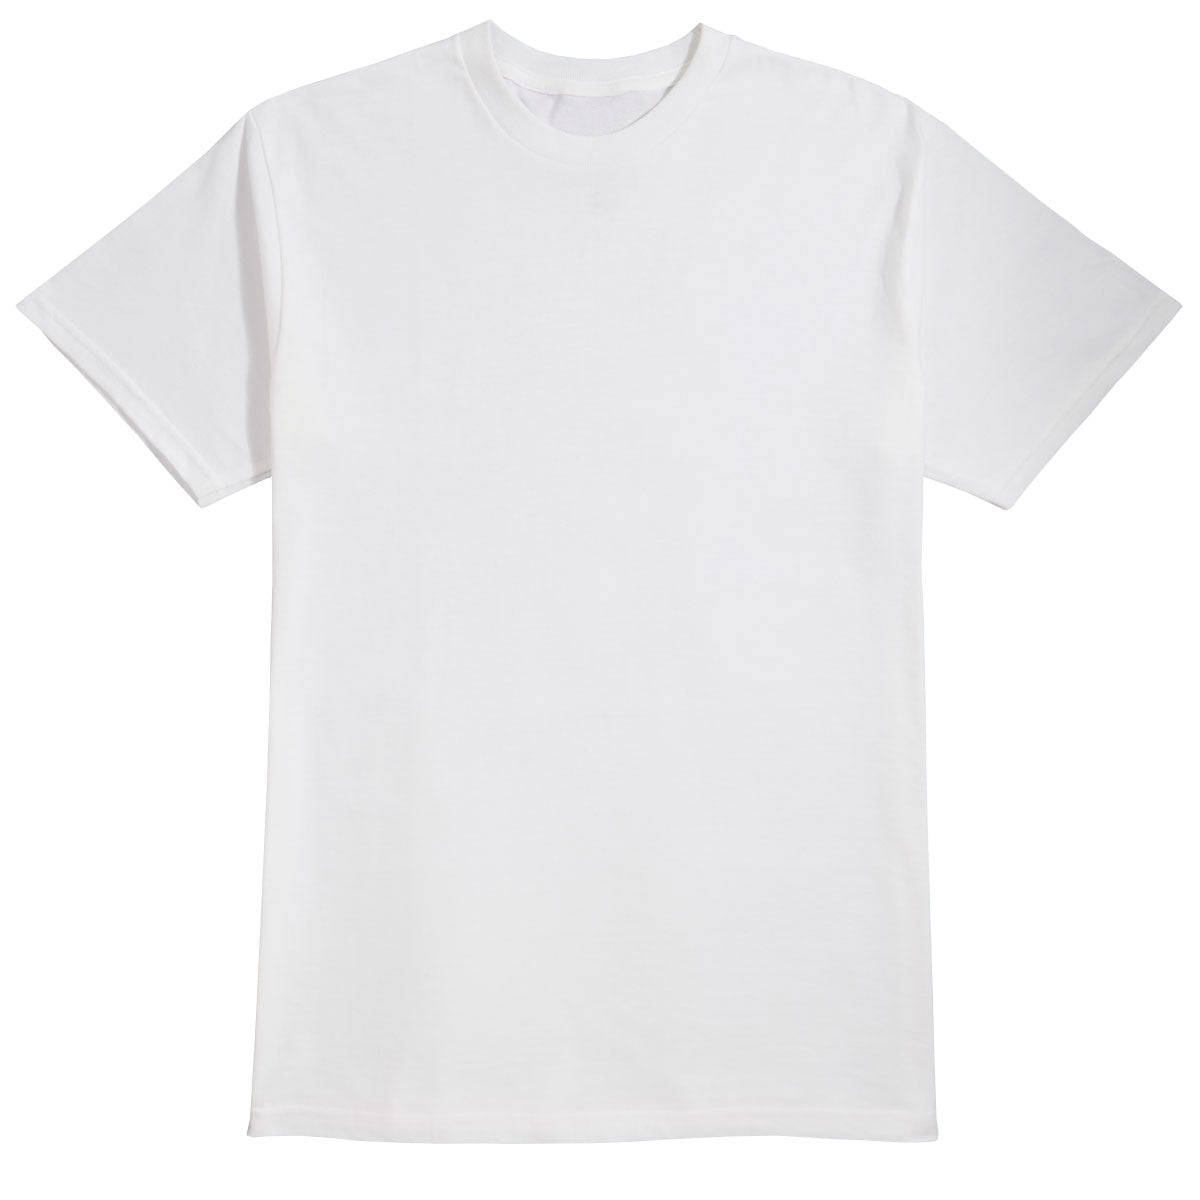 Habitat Quartus Pheasant T-Shirt - White - XL image 1